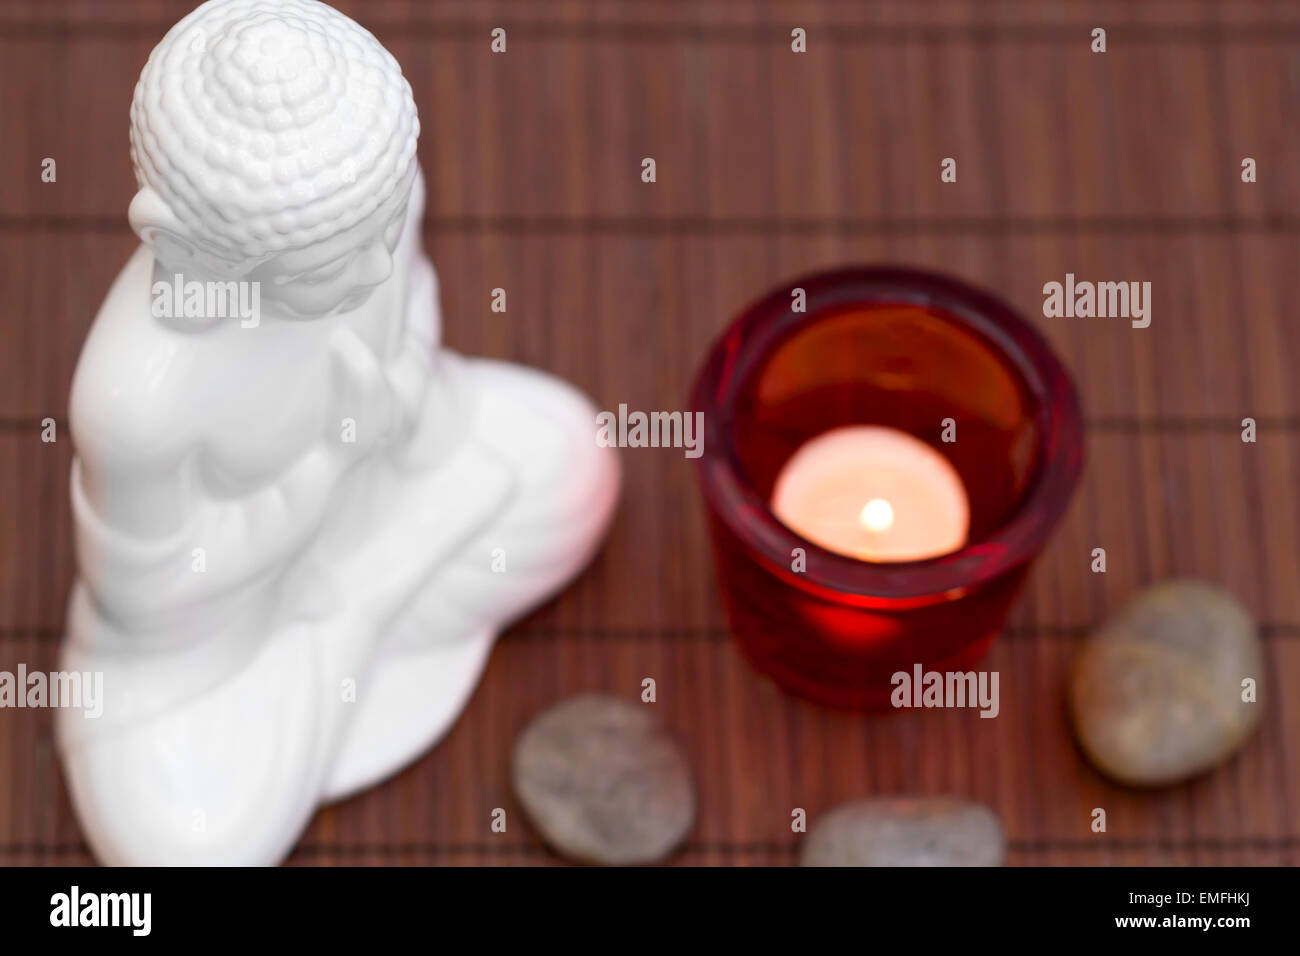 Figura blanca en pose de meditación con cantos rodados y vela en vidrio rojo desde arriba Foto de stock